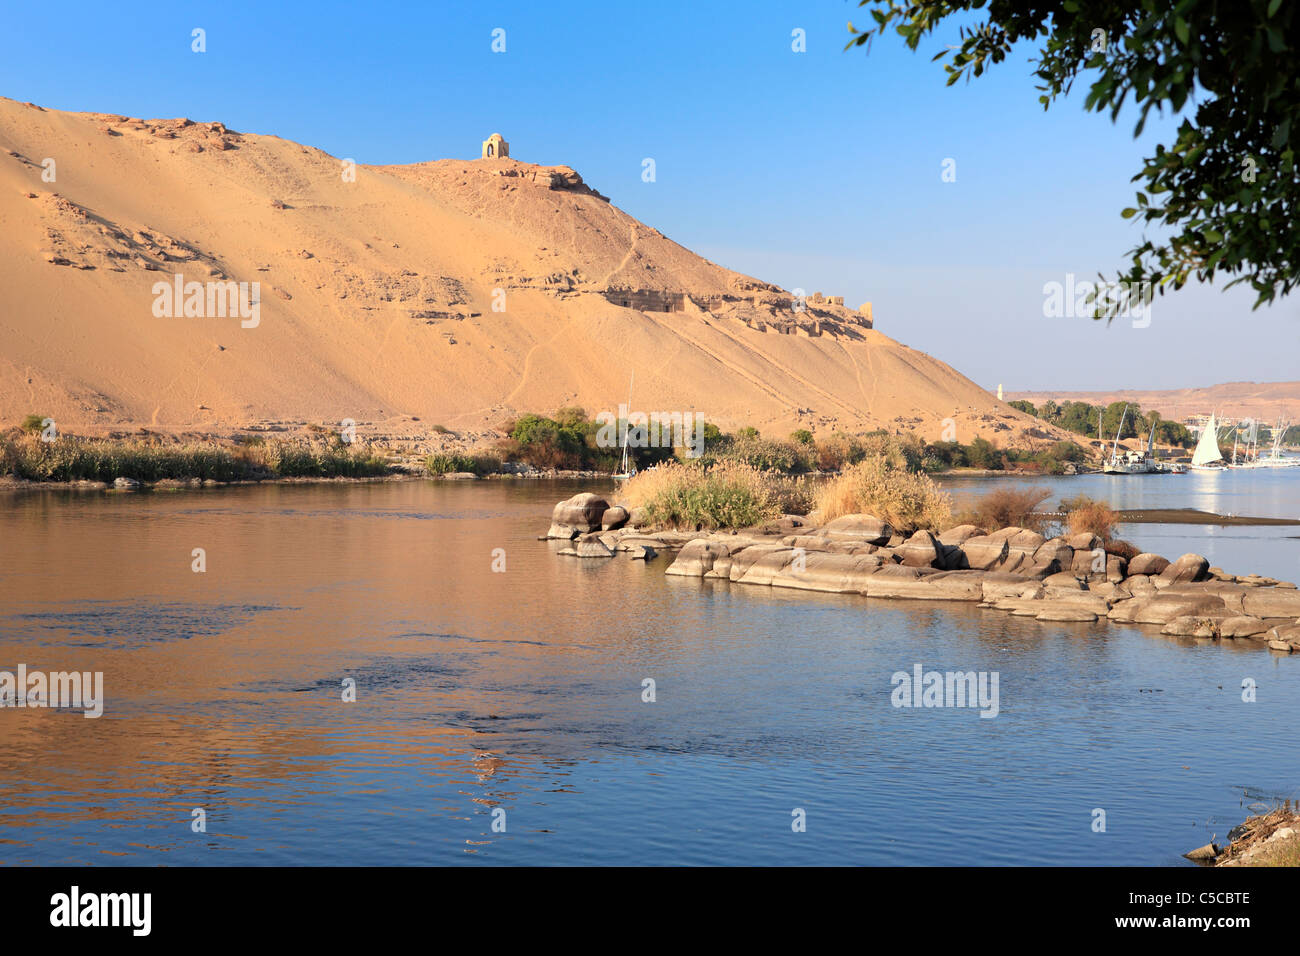 Désert sur la rive ouest du Nil, vue depuis l'île de Kitchener, Assouan, Egypte Banque D'Images